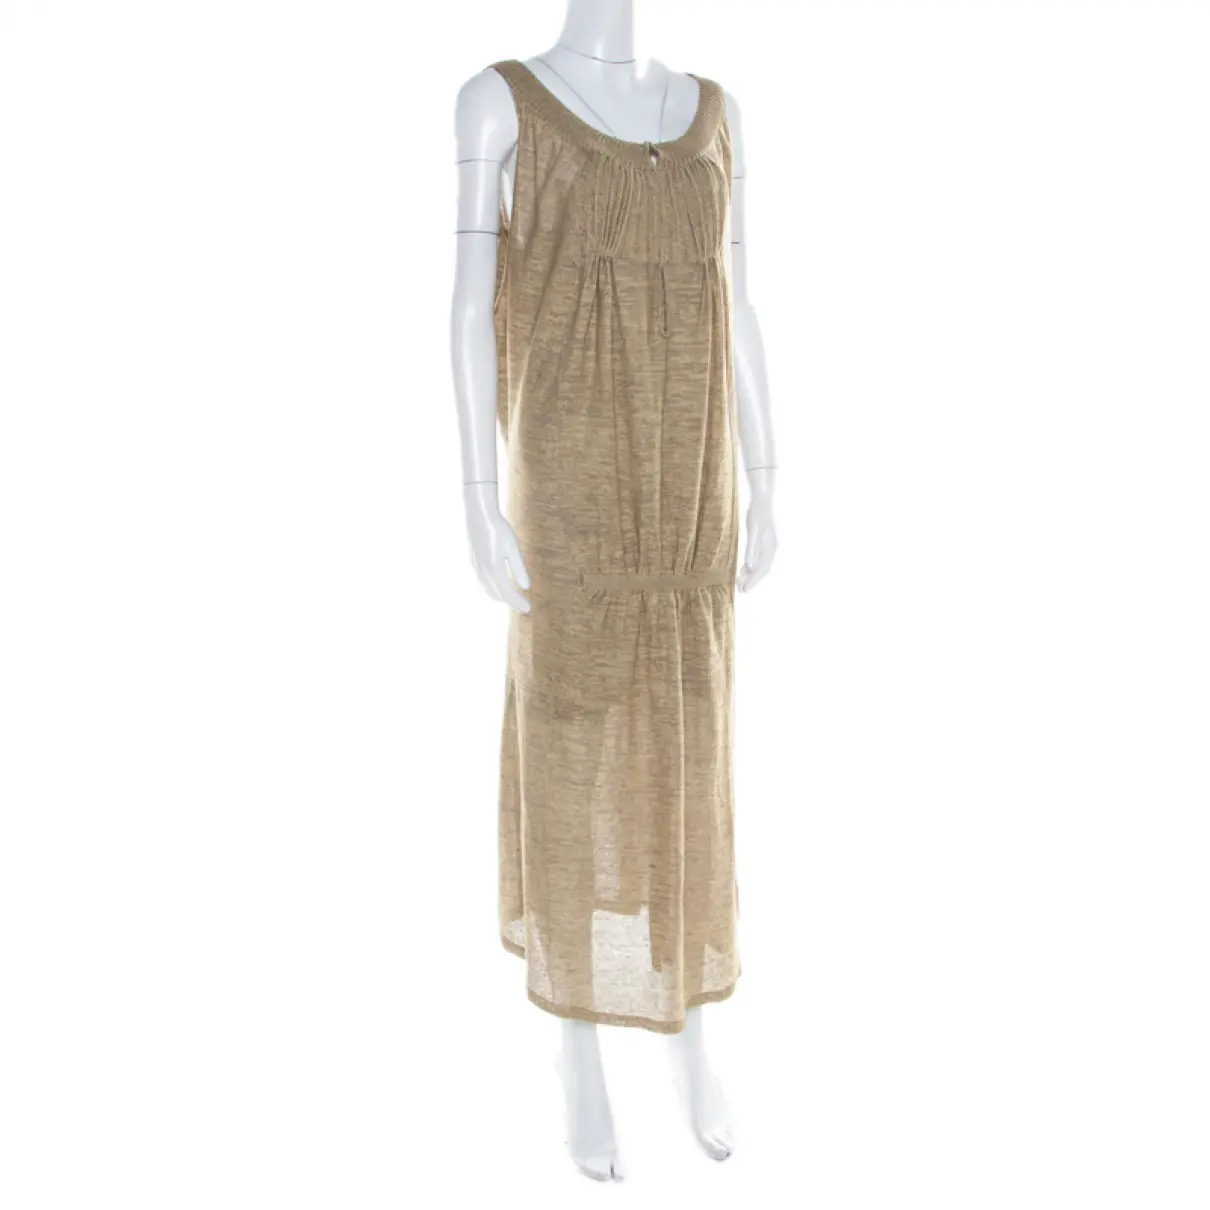 Buy Sonia Rykiel Dress online - Vintage